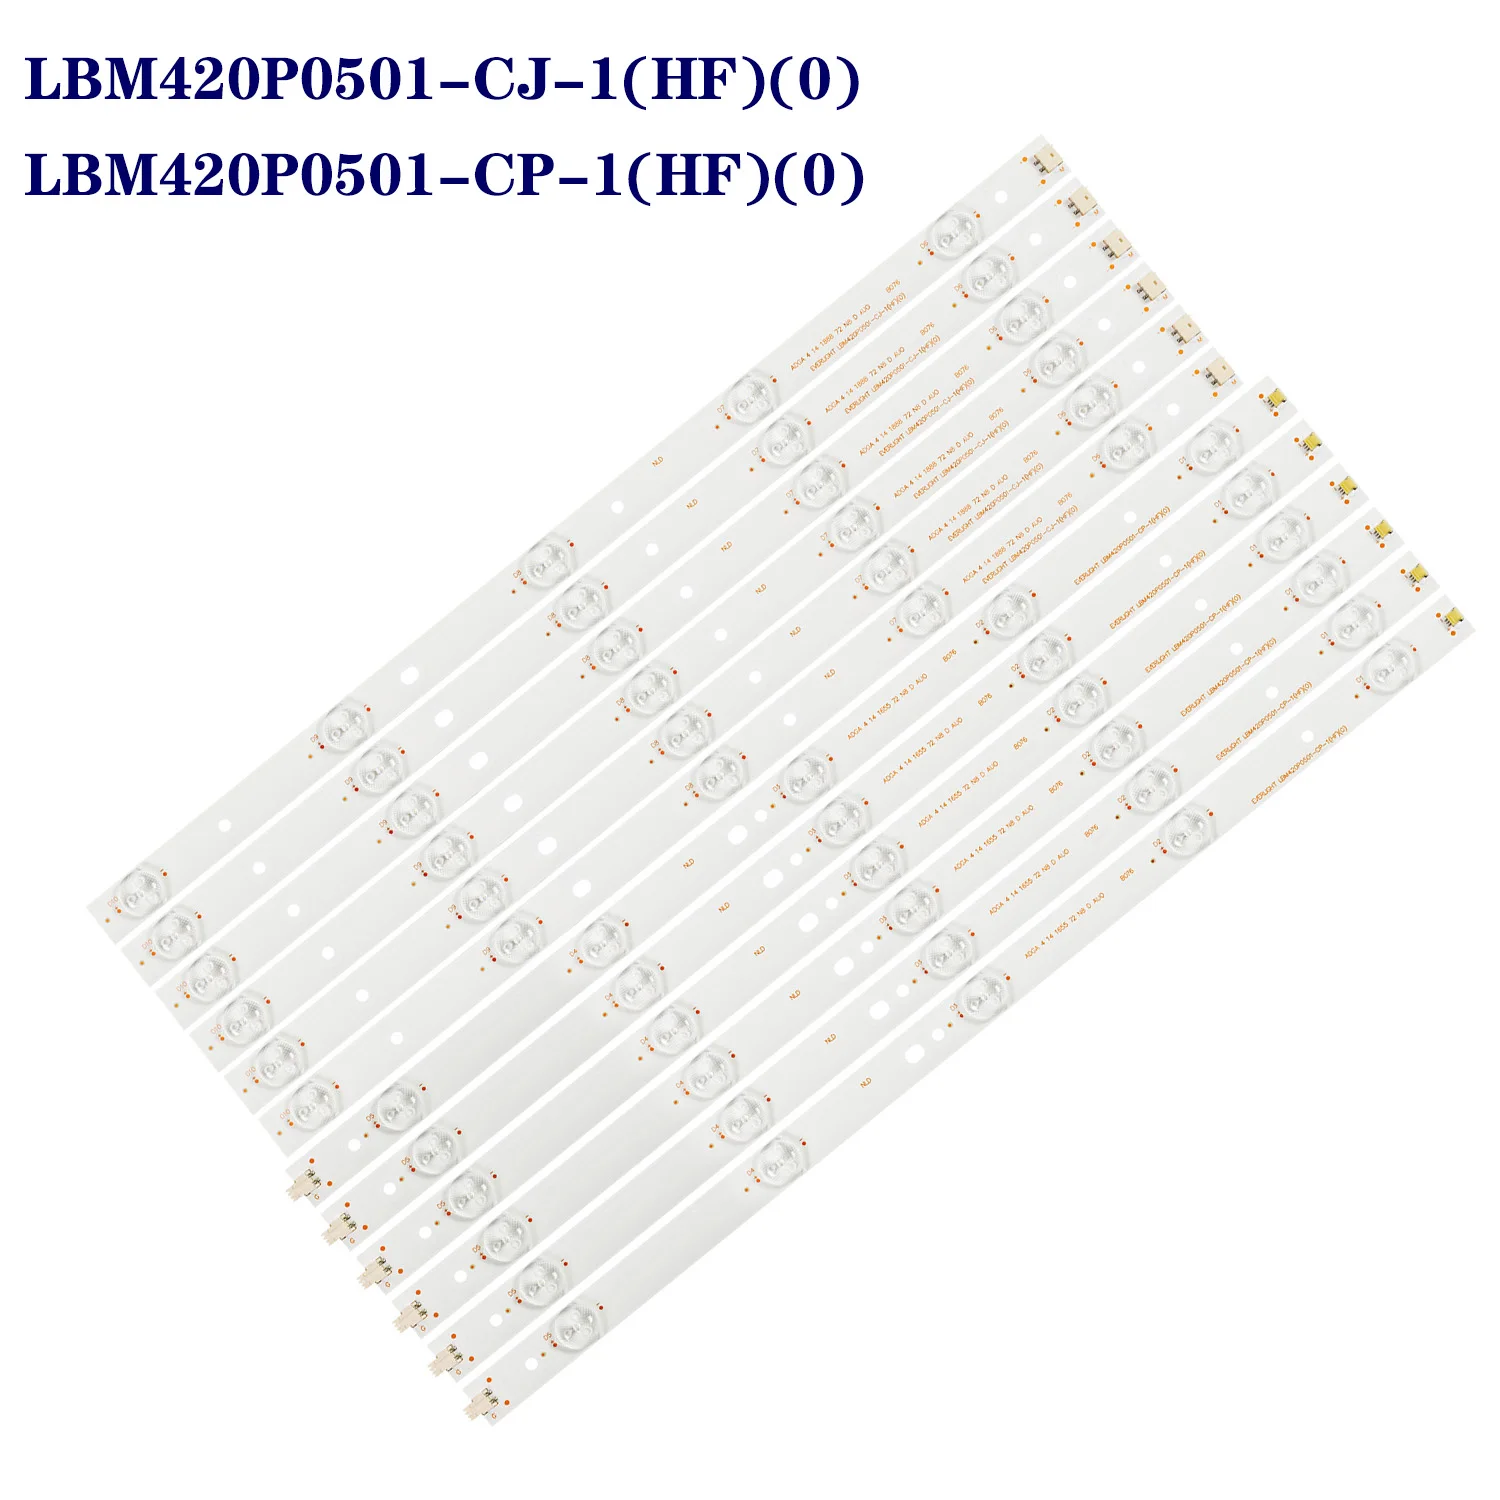 LED Backlight Strips For SHARP LC-42LB150U LC-42LD265E LC-42LD265RU LC-42LD266K 42LD266K TPT420H2-HVN06 LBM420P0501-CP-1